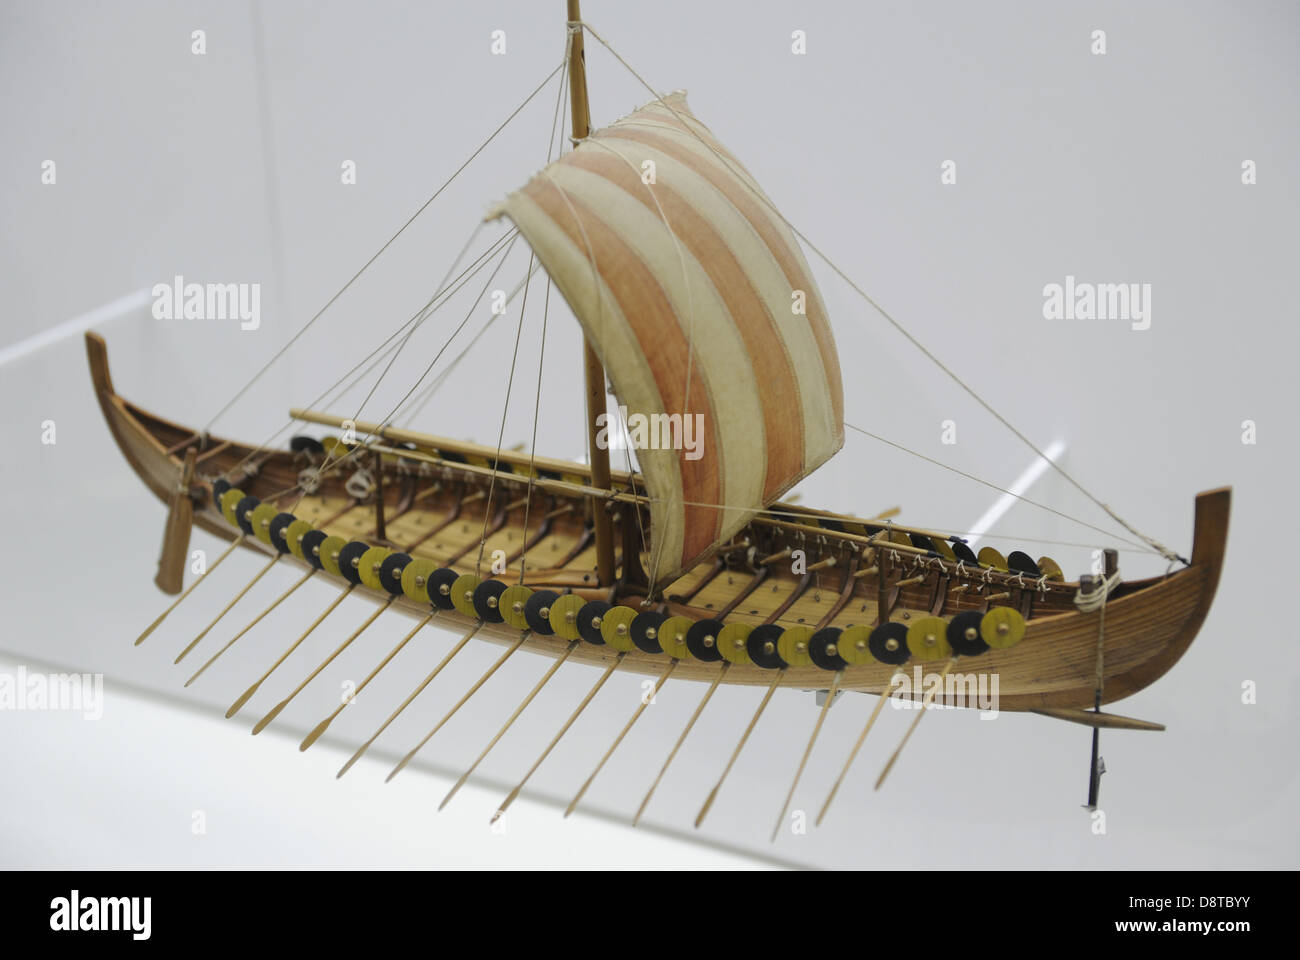 Bateau Viking. Navire de Gokstad, environ 900 A.D. a été trouvé dans un cimetière près de Gokstad, la Norvège. Réplique. Échelle : 1:50. Banque D'Images